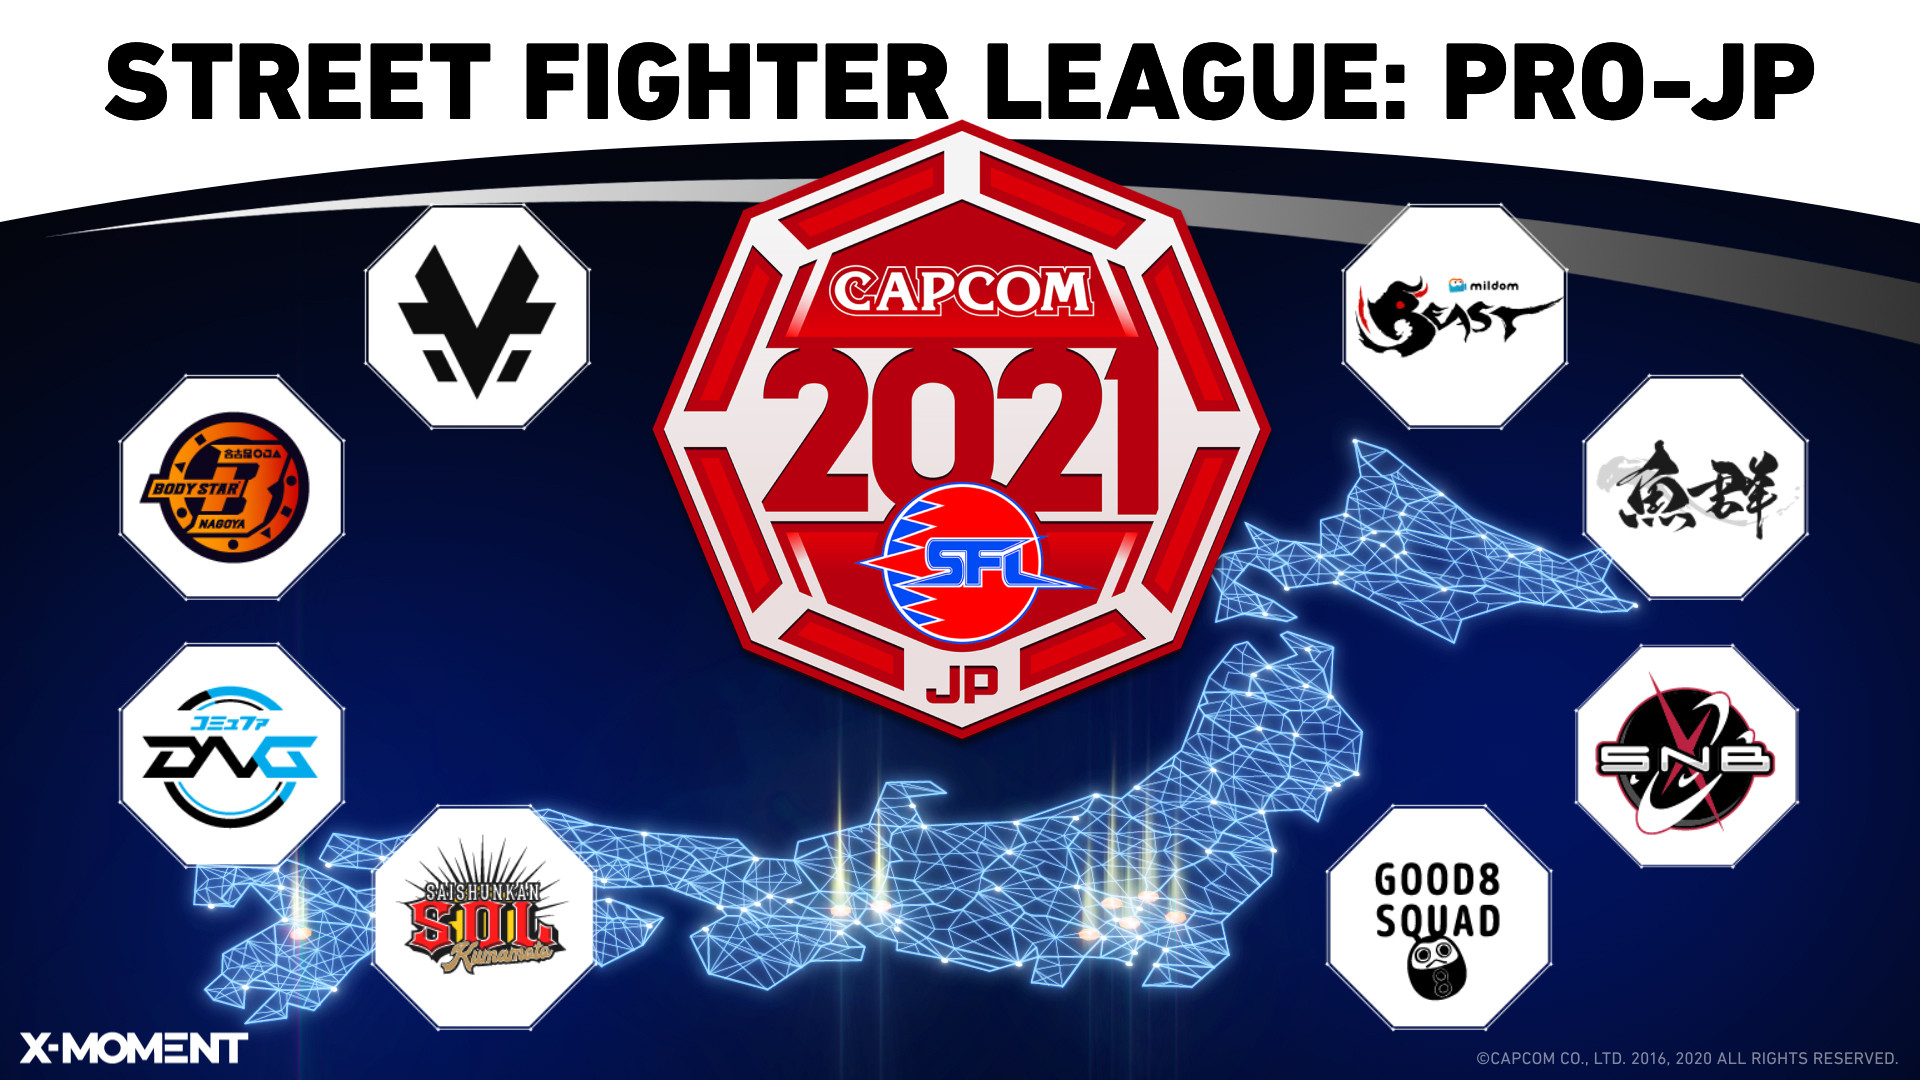 【大会情報】ストリートファイターリーグ: Pro-JP 2021 第12節【2021年11月29日、30日】